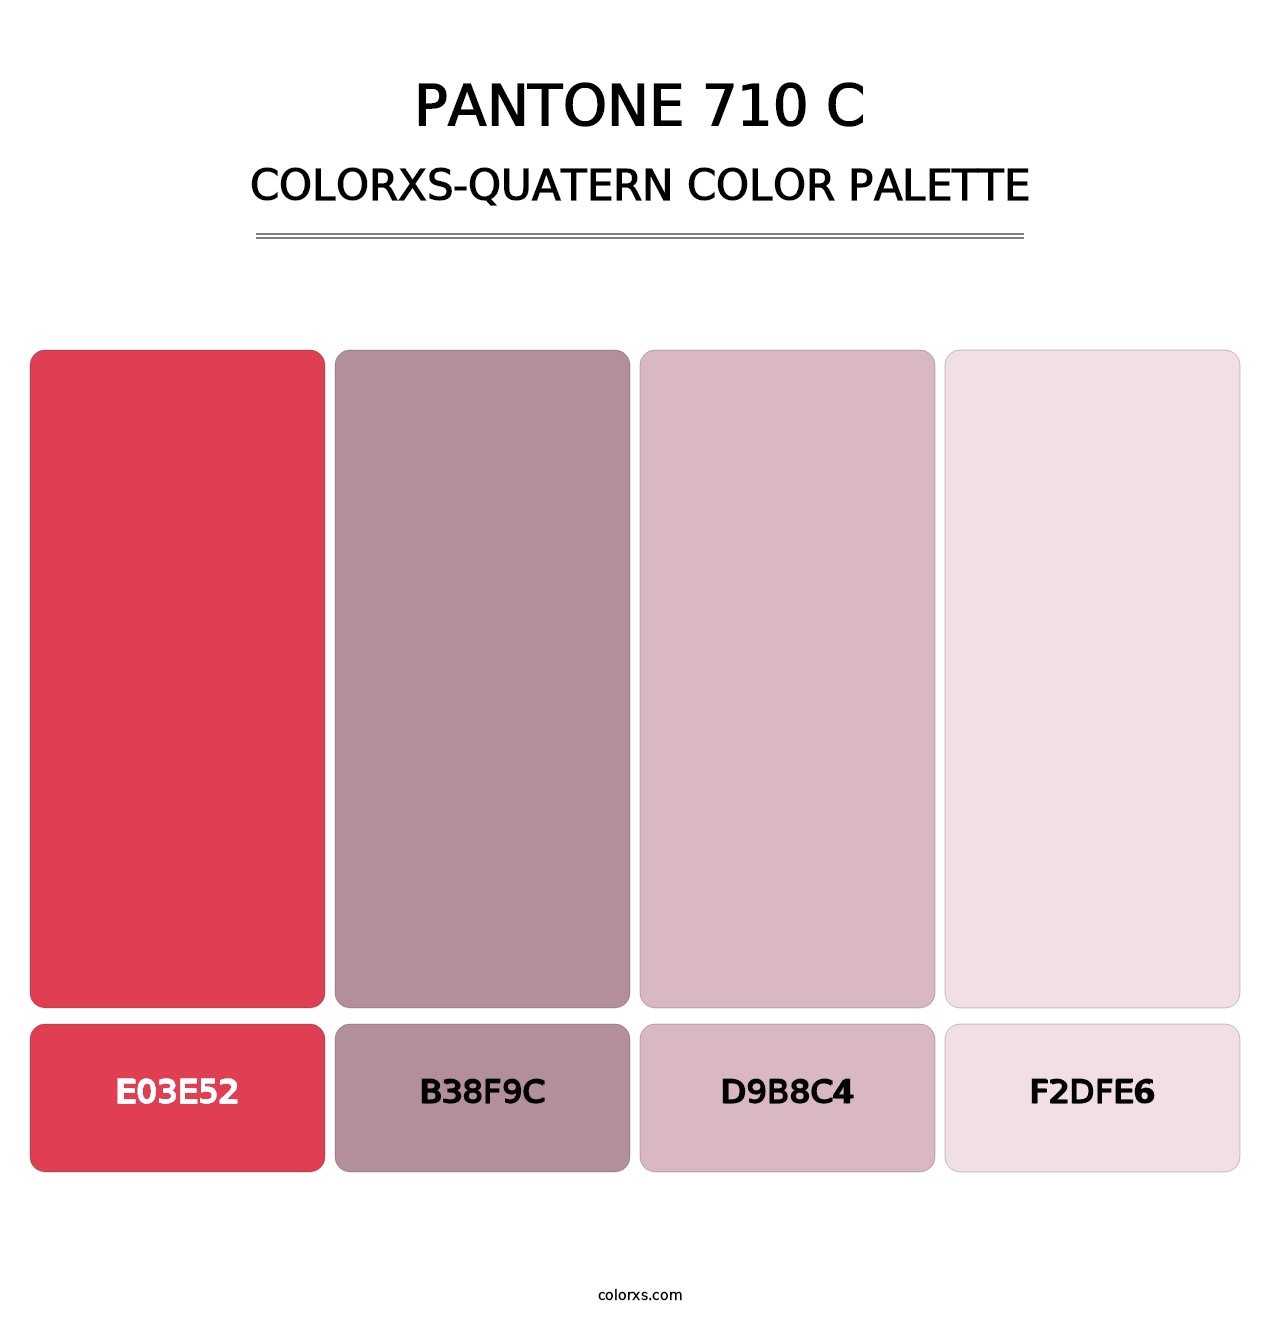 PANTONE 710 C - Colorxs Quatern Palette